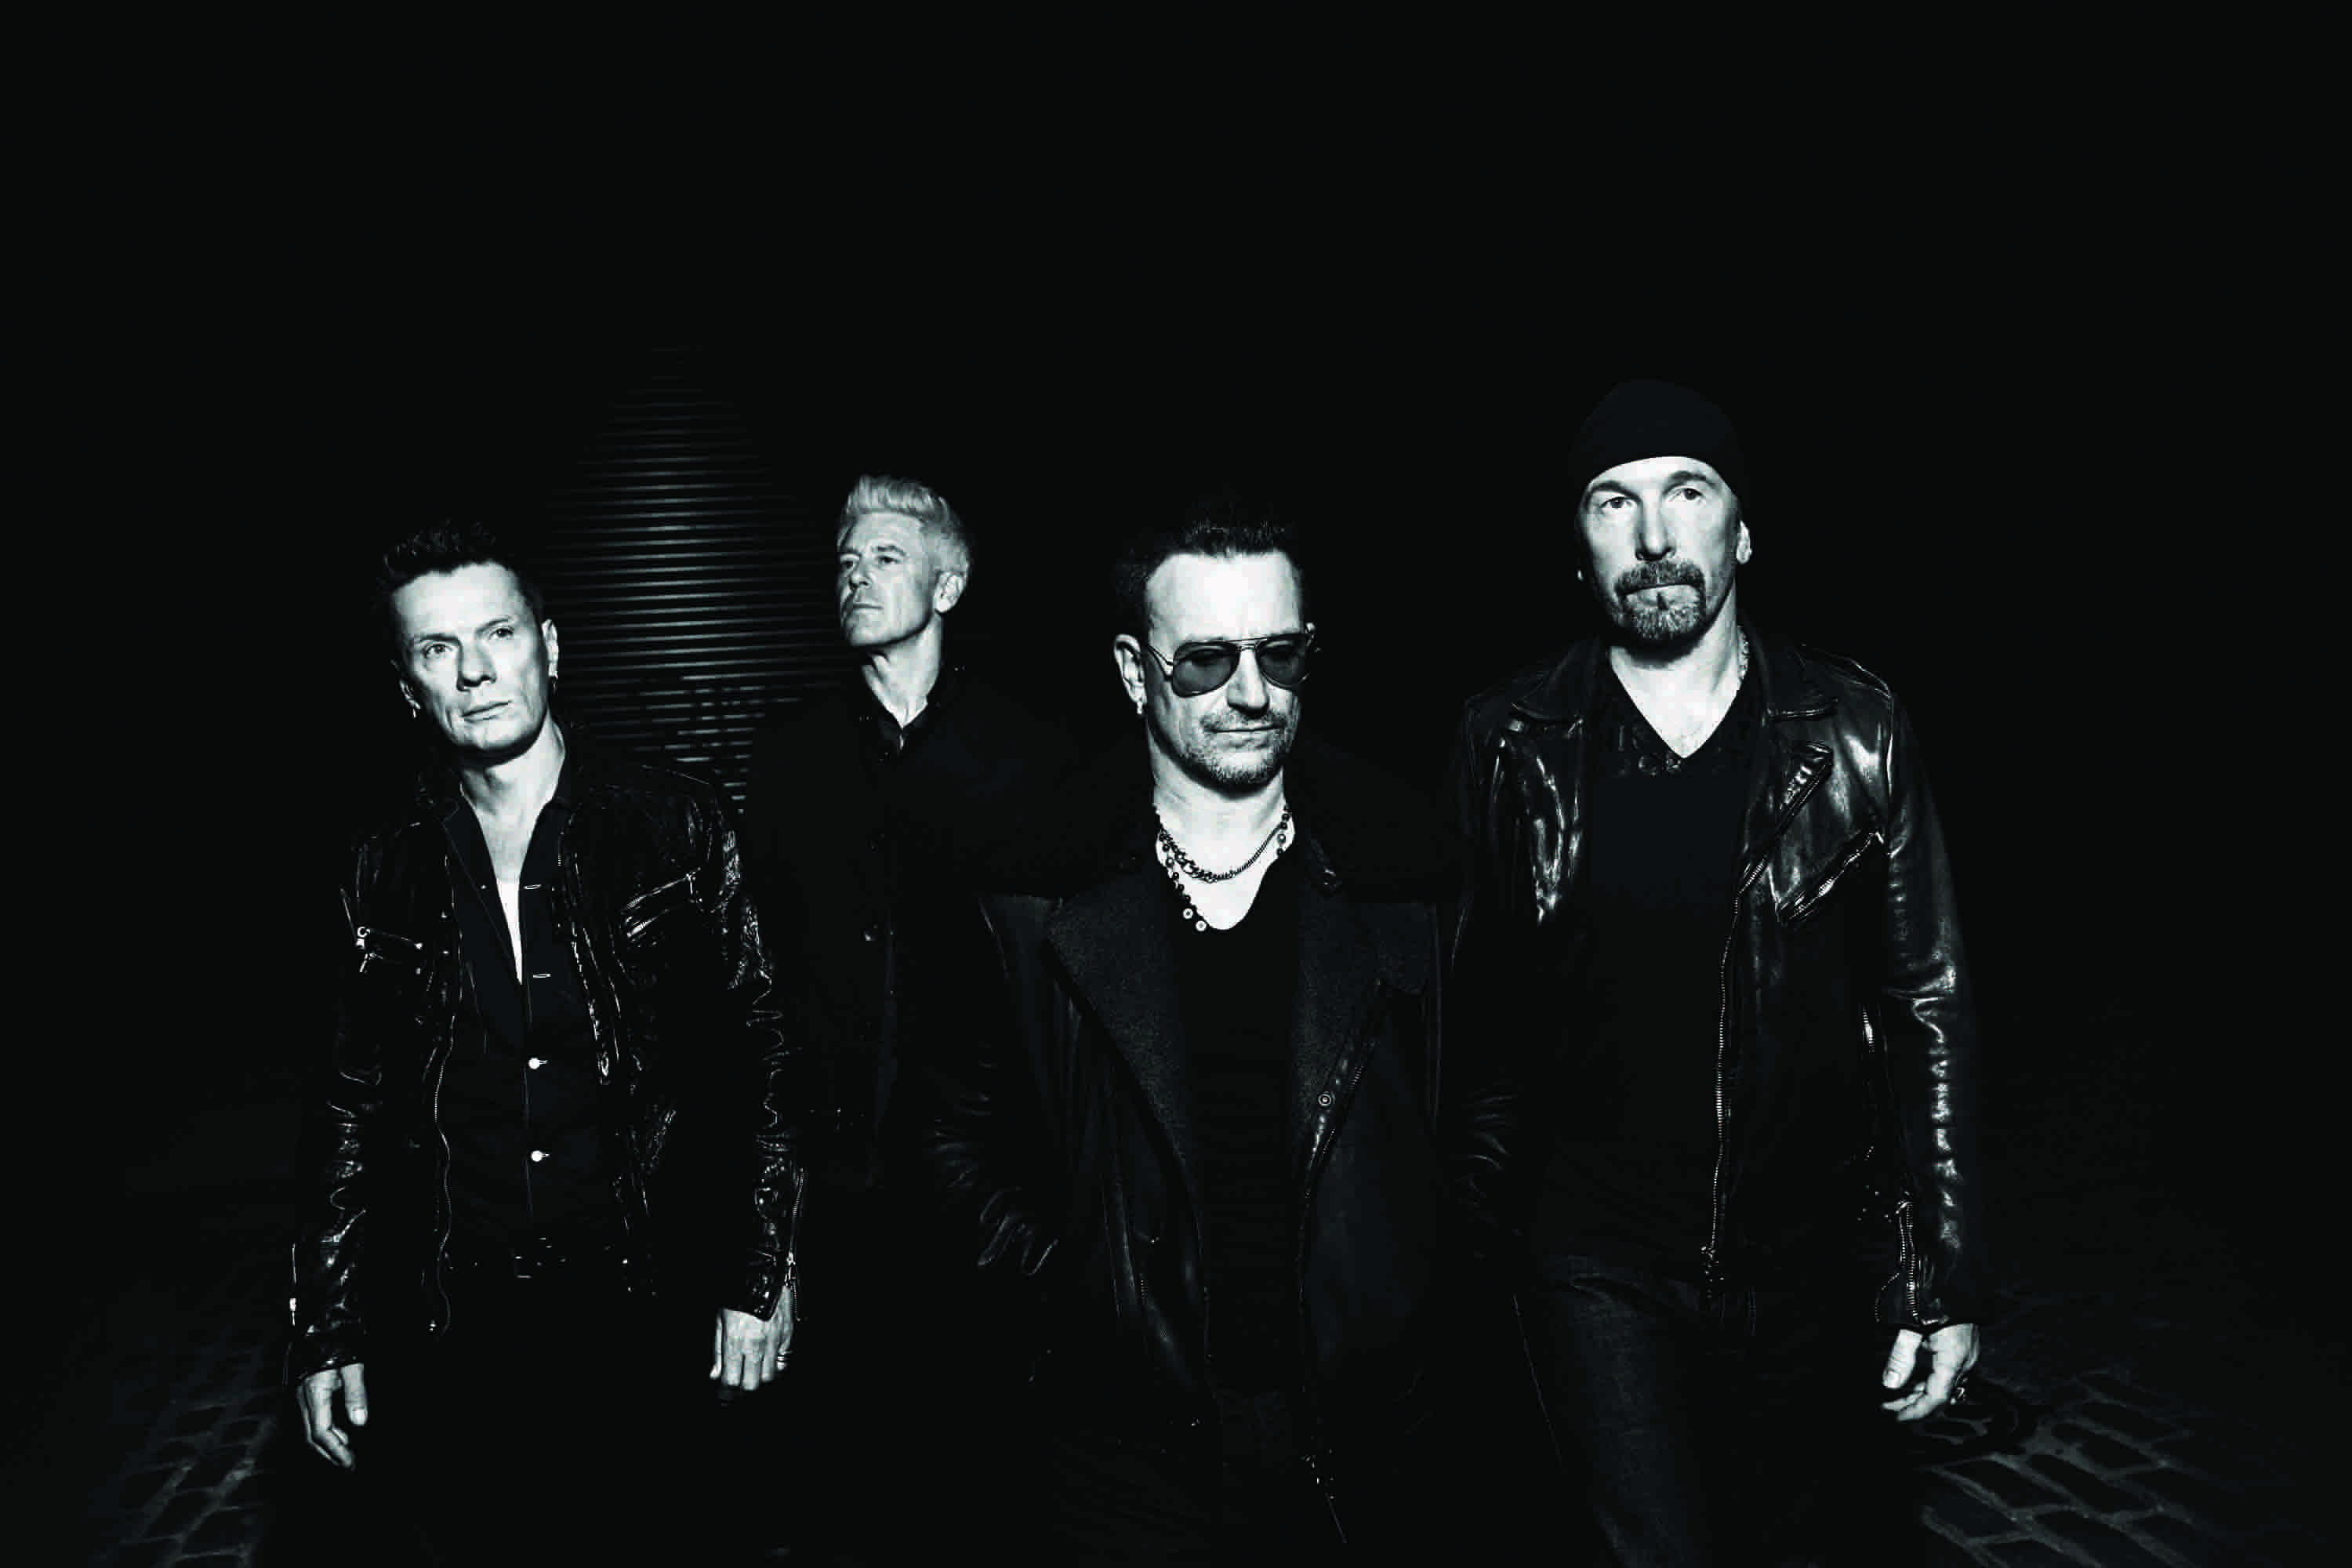 Viele Stars geben 2017 Konzerte in Deutschland: U2, Depeche Mode, The xx, Bob Dylan. Wir geben einen Überblick über die musikalischen Live-Höhepunkte in diesem Jahr.